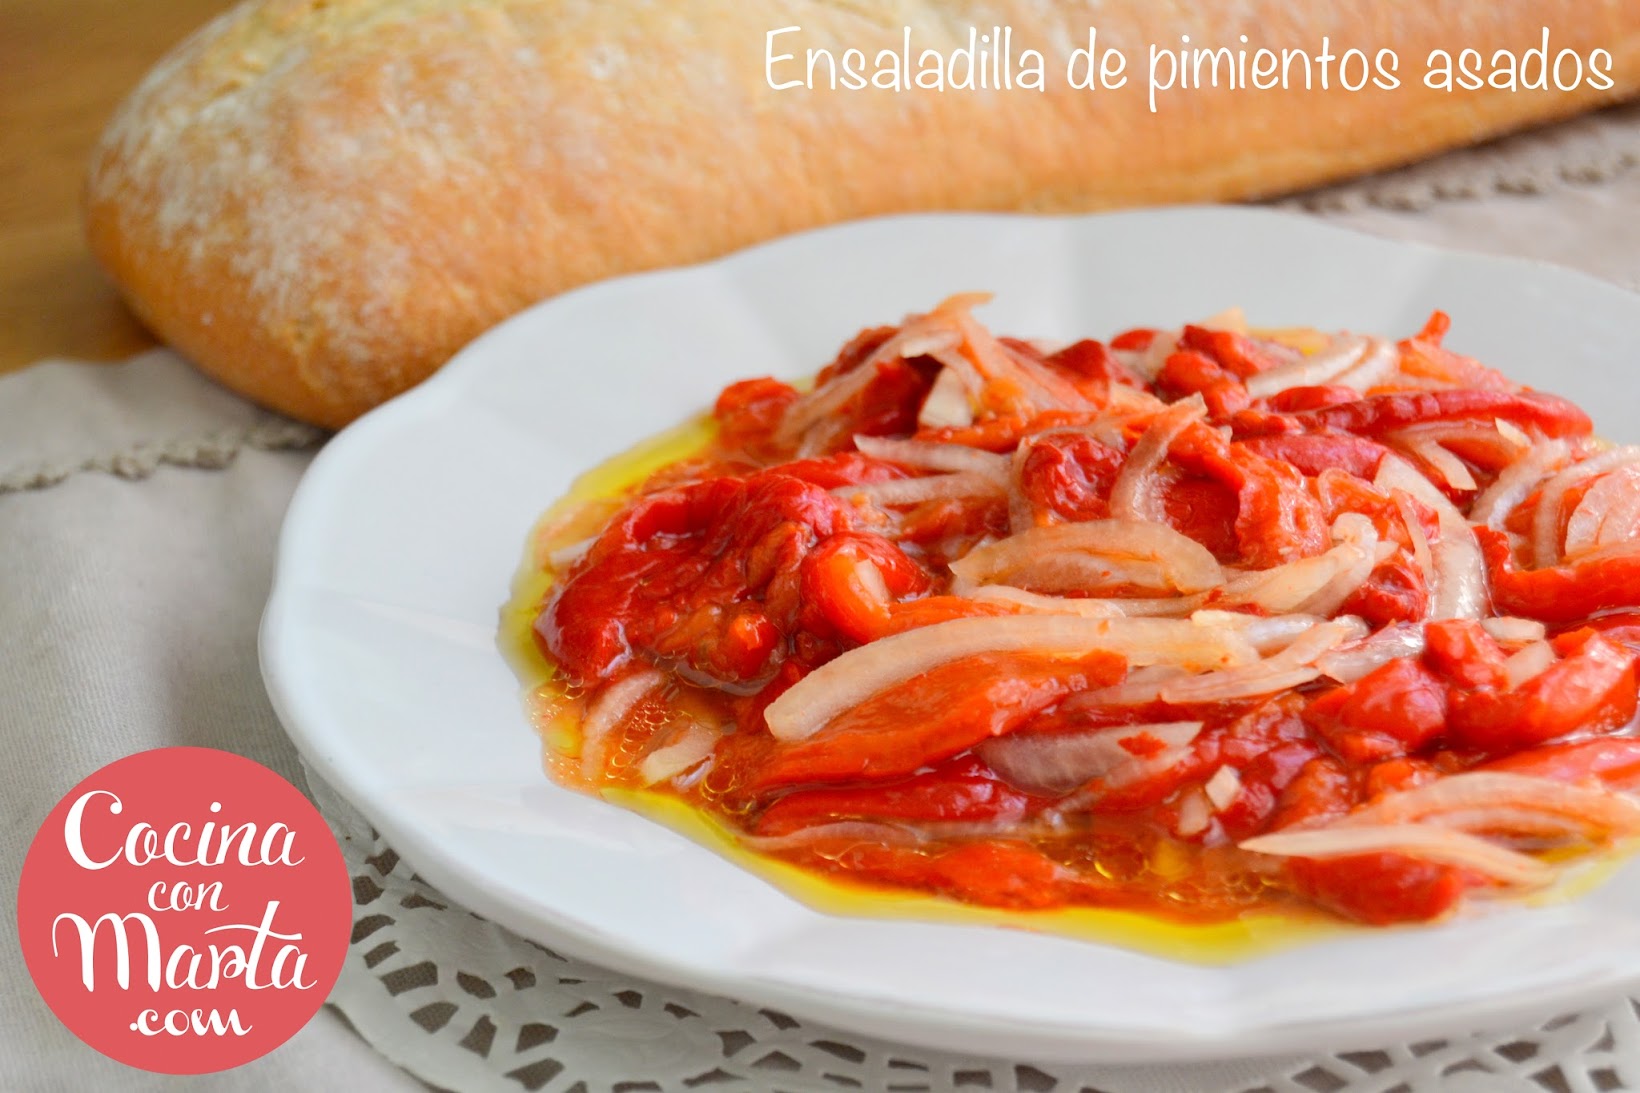 ensaladilla de pimientos asados, pimientos rojos, receta, Málaga, receta típica malagueña, sana, cocina con marta